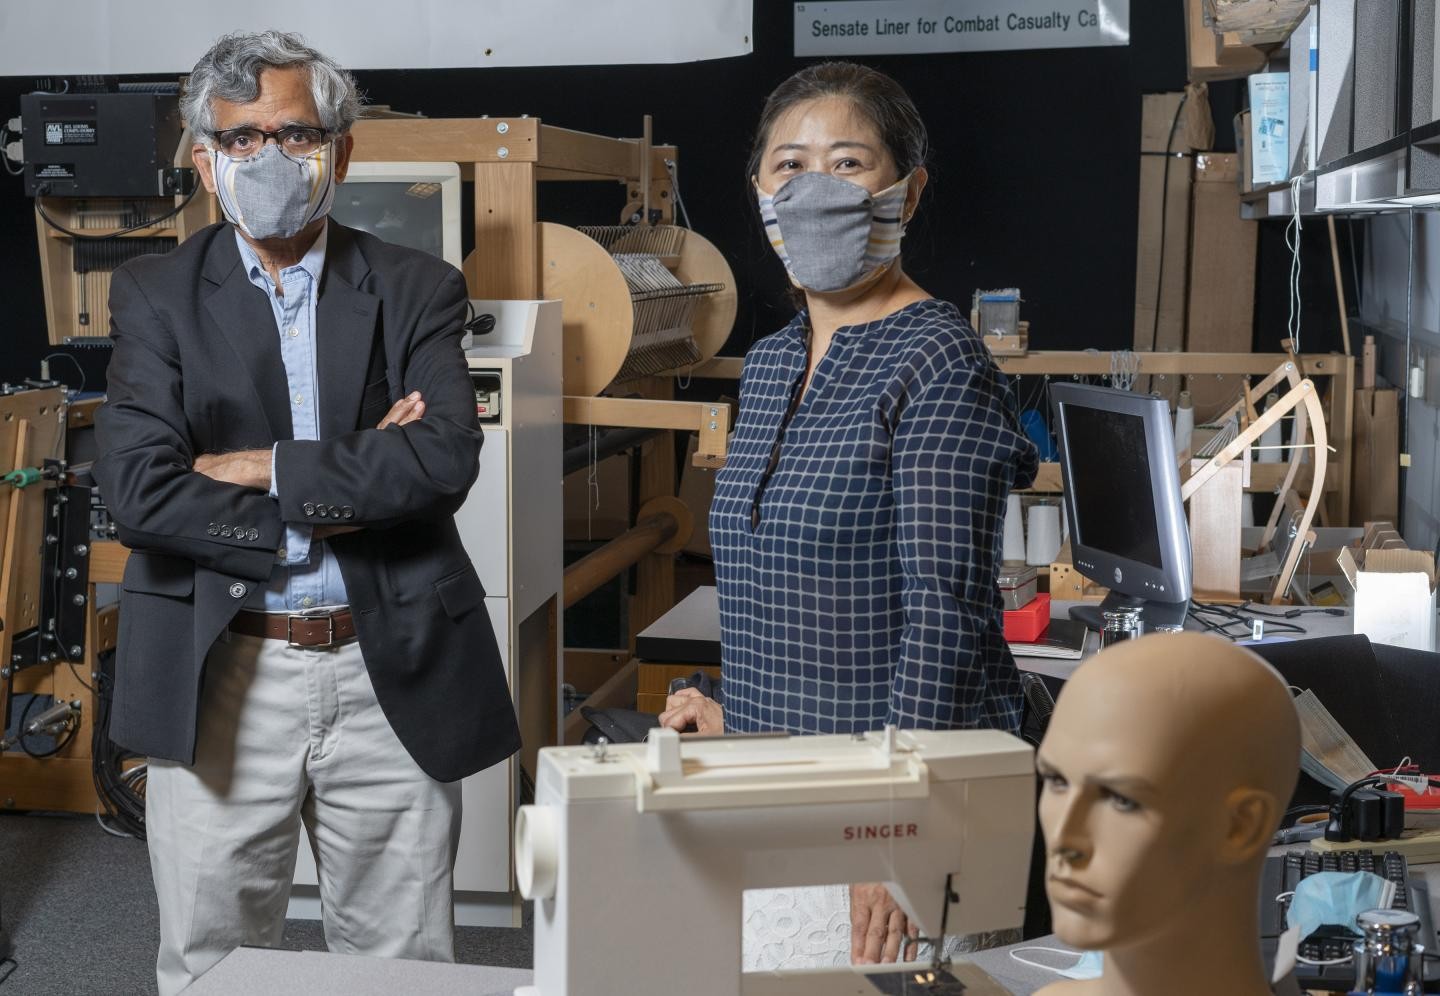 O professor Sundaresan Jayaraman e a cientista Sungmee Park, ambos do Instituto de Tecnologia da Georgia, usam os protótipos da máscara que desenvolveram (Foto: Christopher Moore/Georgia Tech)